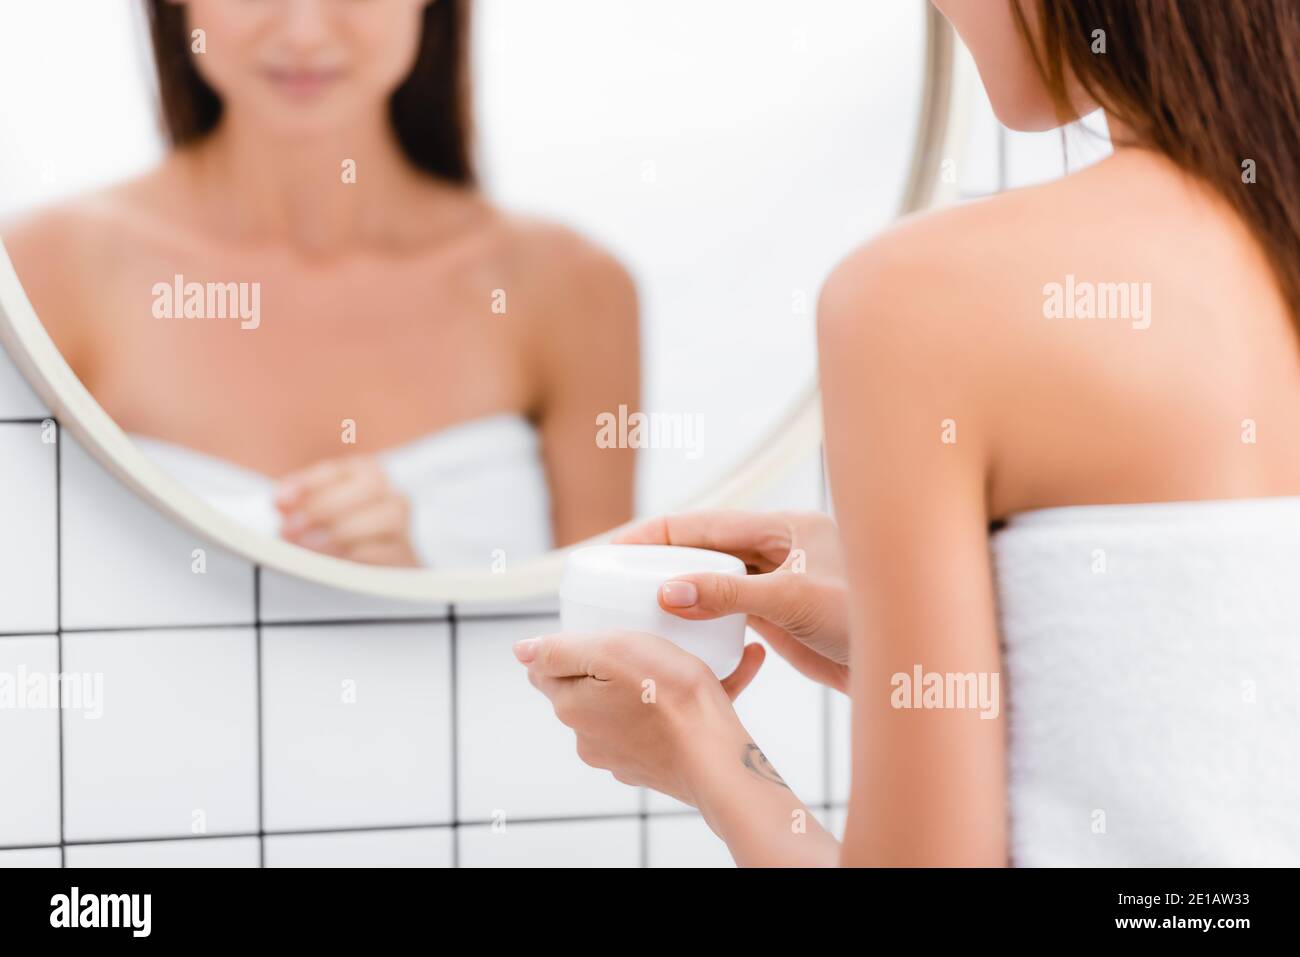 Beschnittene Ansicht der jungen Frau Öffnen Behälter von kosmetischen Creme Nahezu unscharfe Spiegelung im Spiegel Stockfoto